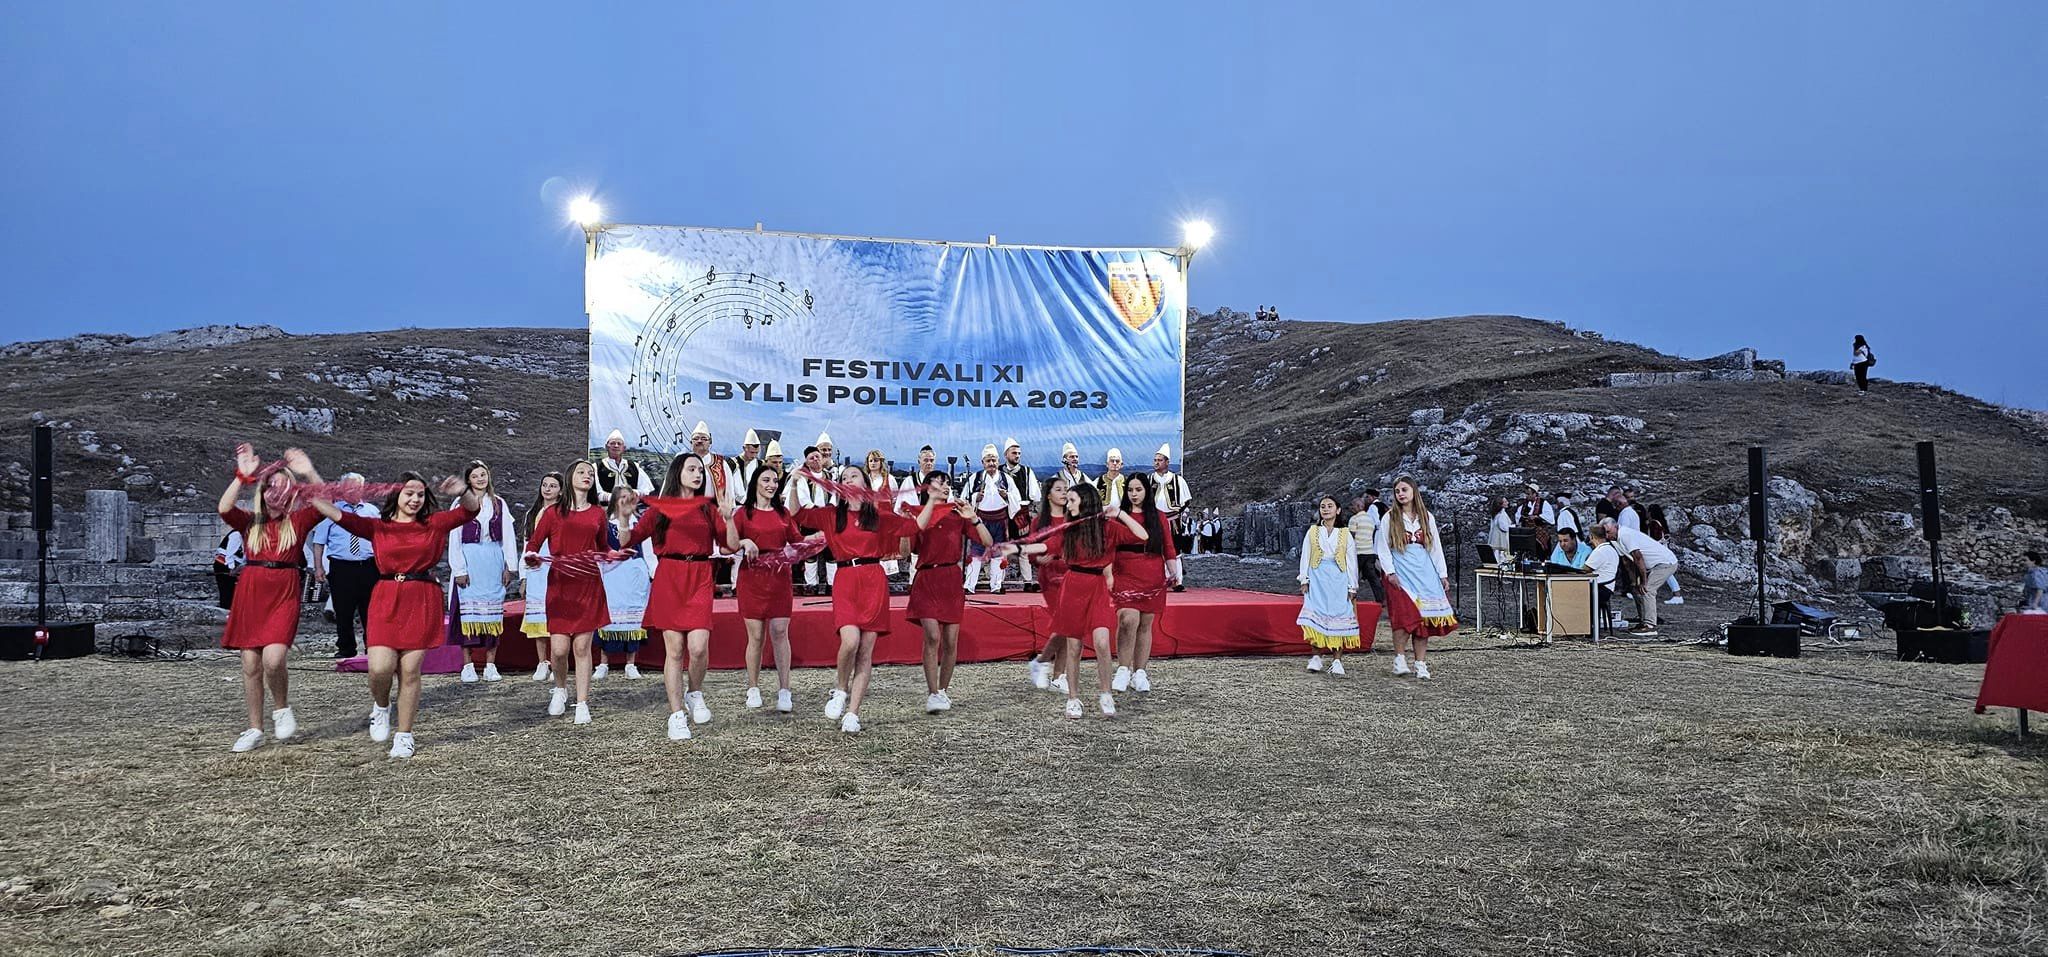 Zhvillohet Festivali i 11 i Polifonisë në Bylis të Mallakastrës.